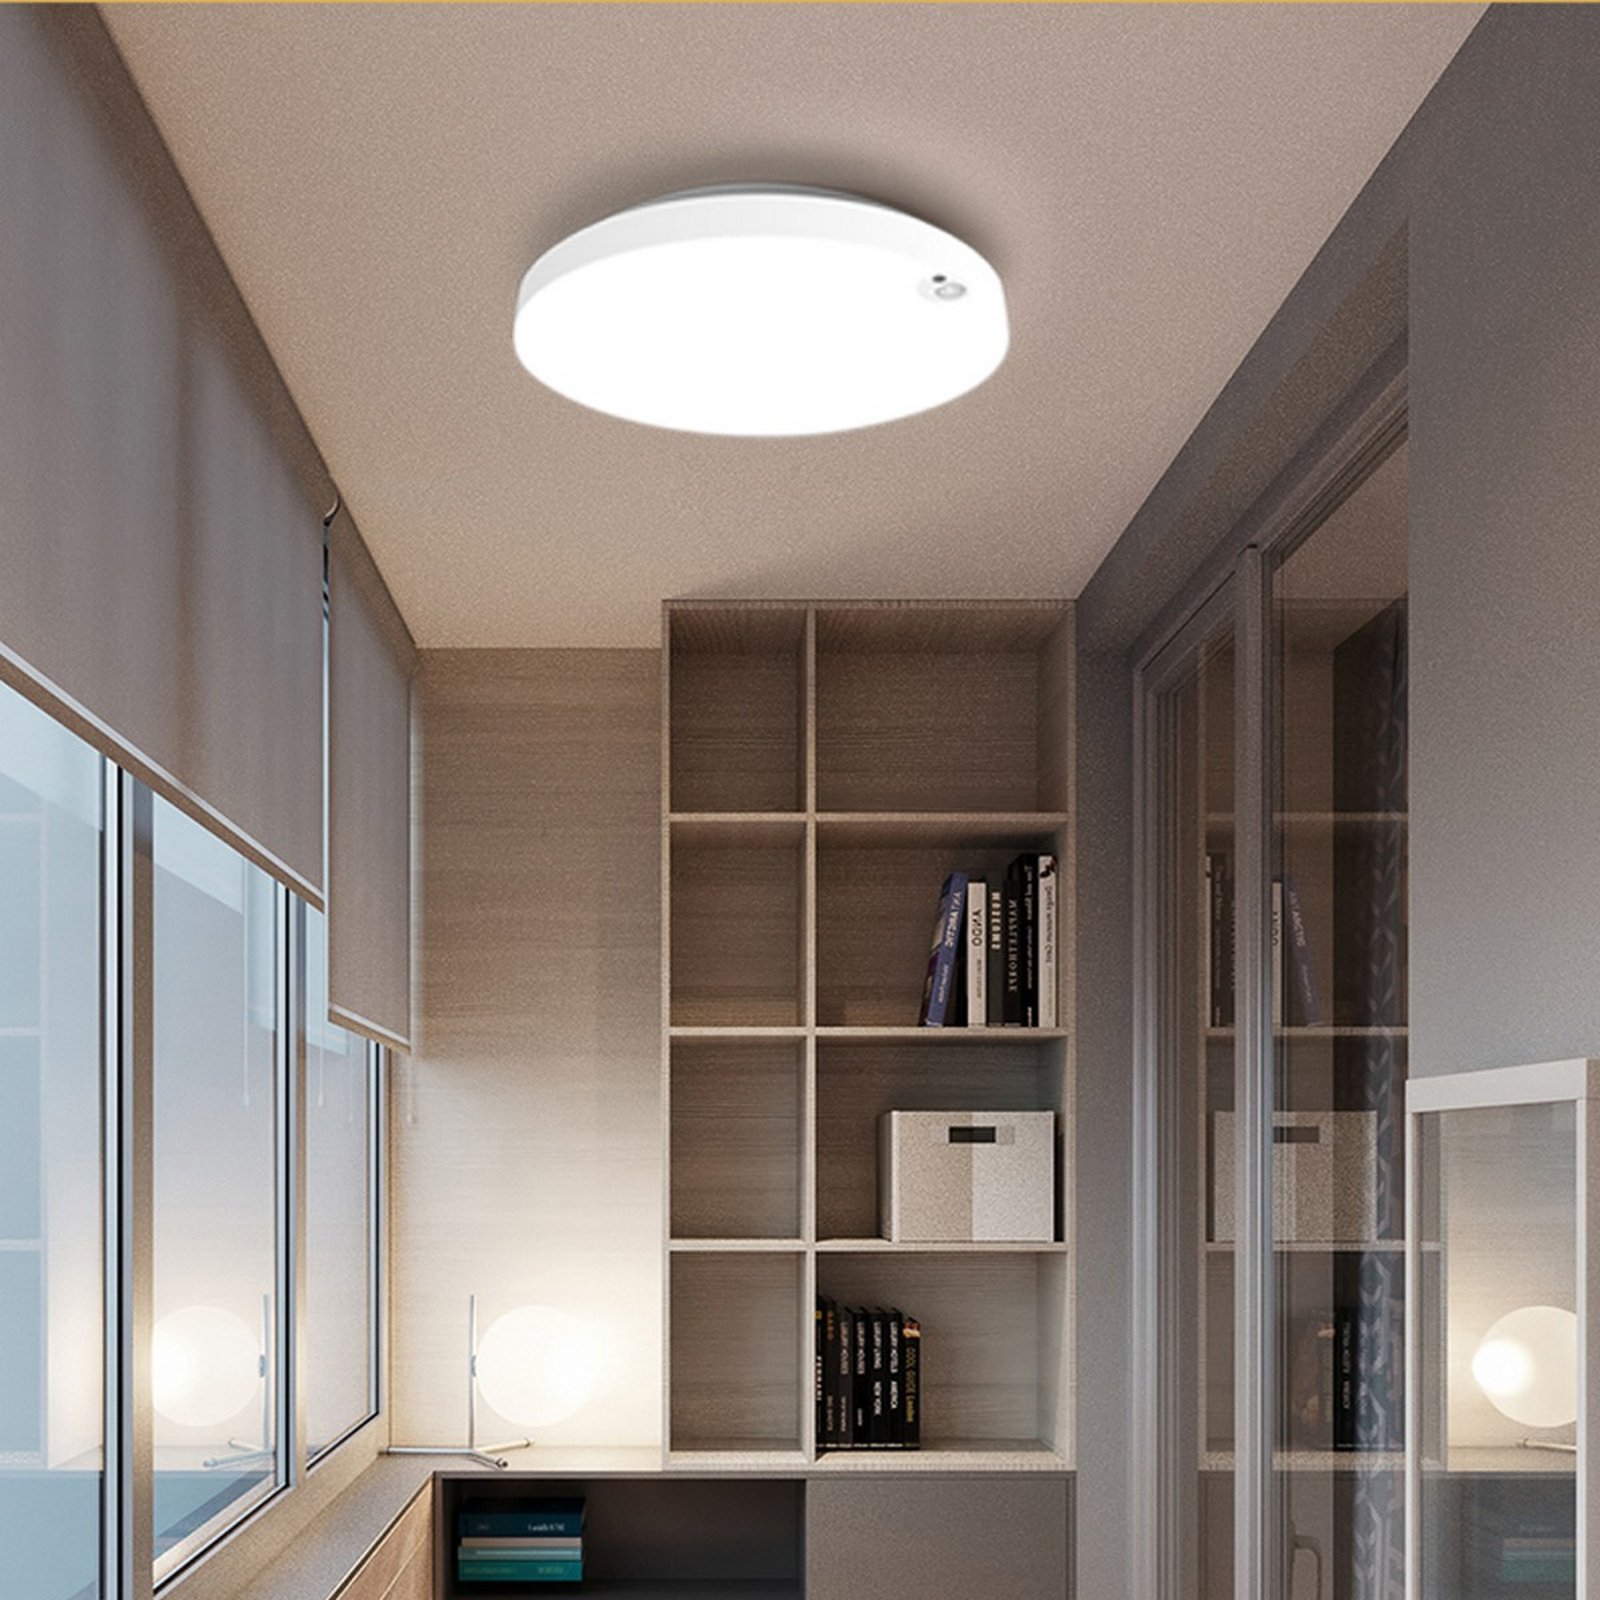 Lampa sufitowa LED Allrounder 1, regulowana barwa światła, czujnik